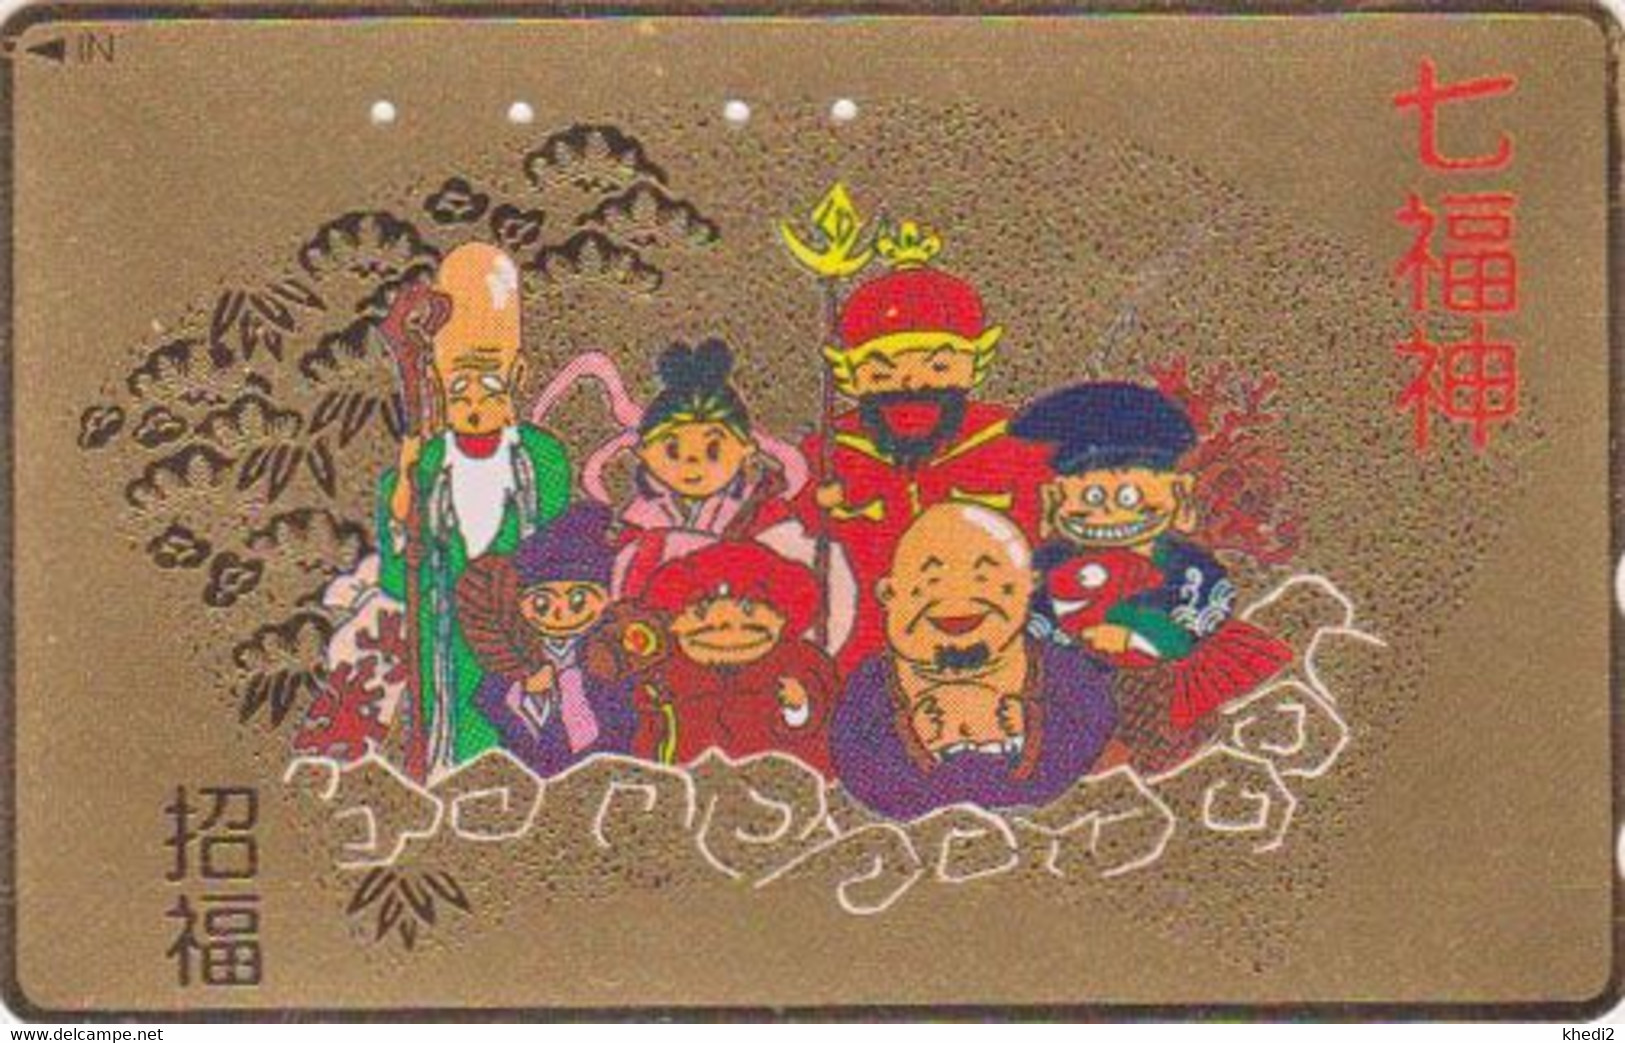 TC DOREE JAPON / 110-011 - Culture RELIGION - 7 DIEUX DU BONHEUR - LUCK GODS JAPAN GOLD Phonecard - 325 - Kultur